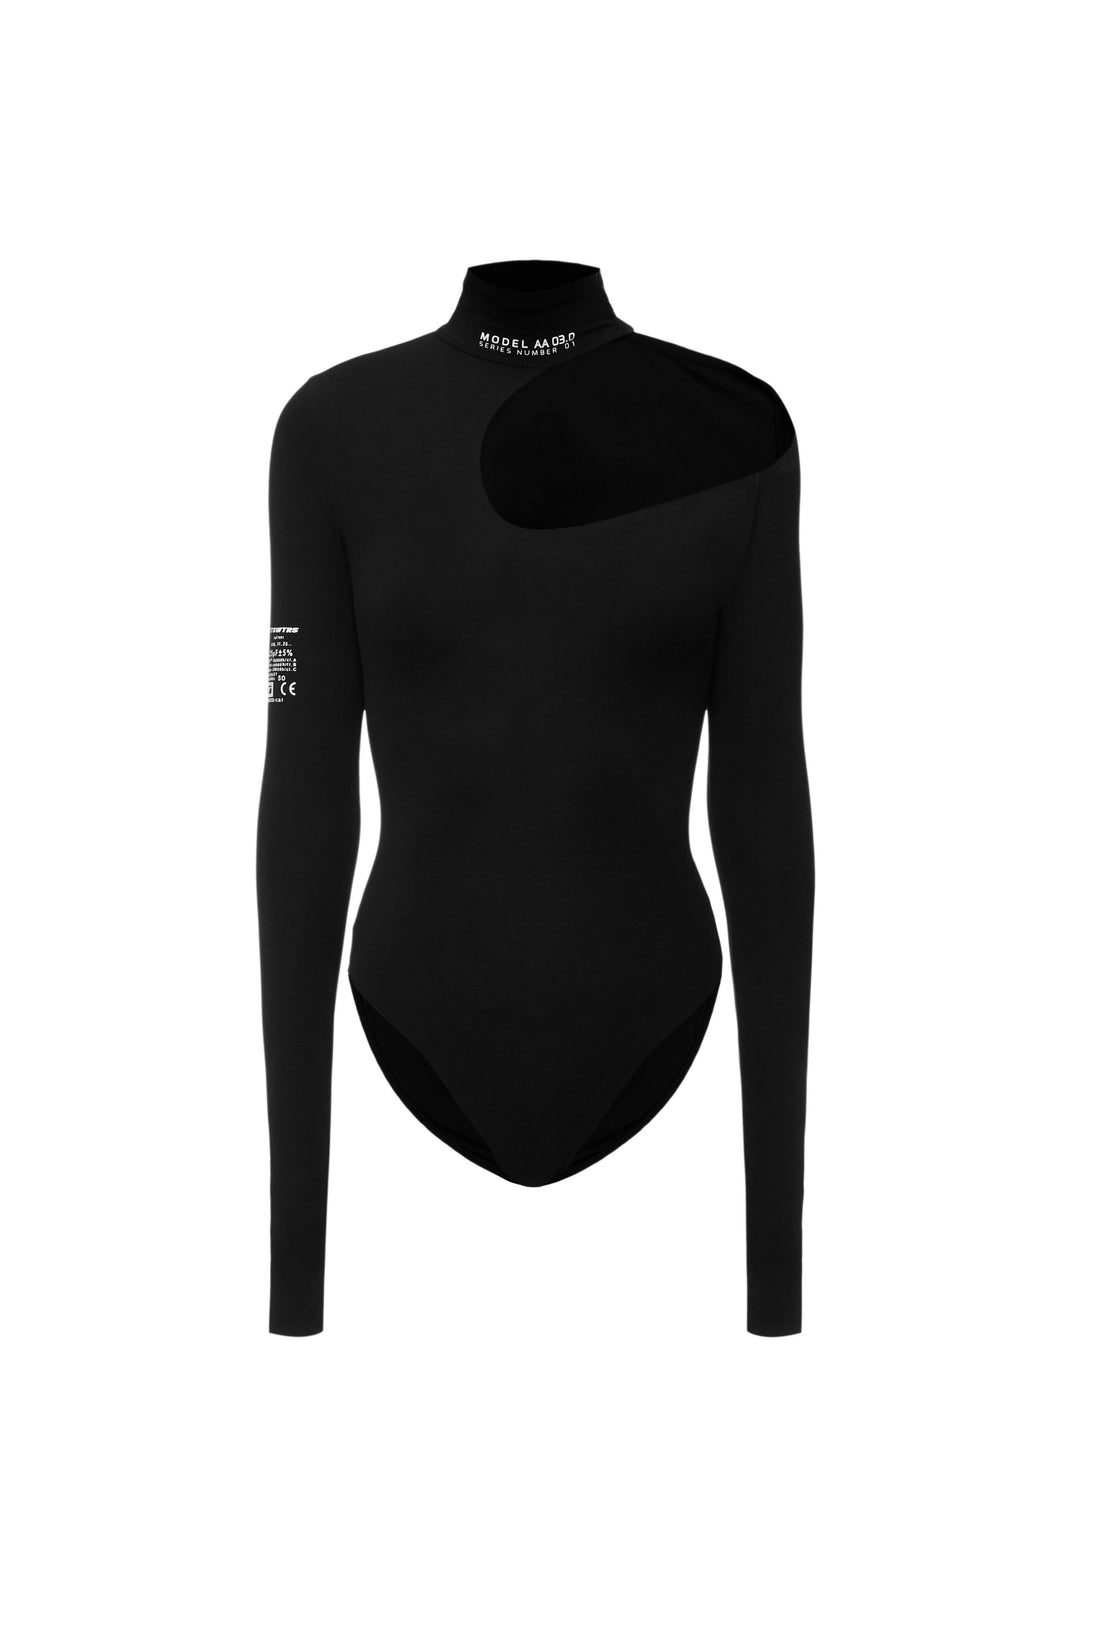 TTSWTRS Black bodysuit with shoulder cut, Bodysuit with shoulder cut